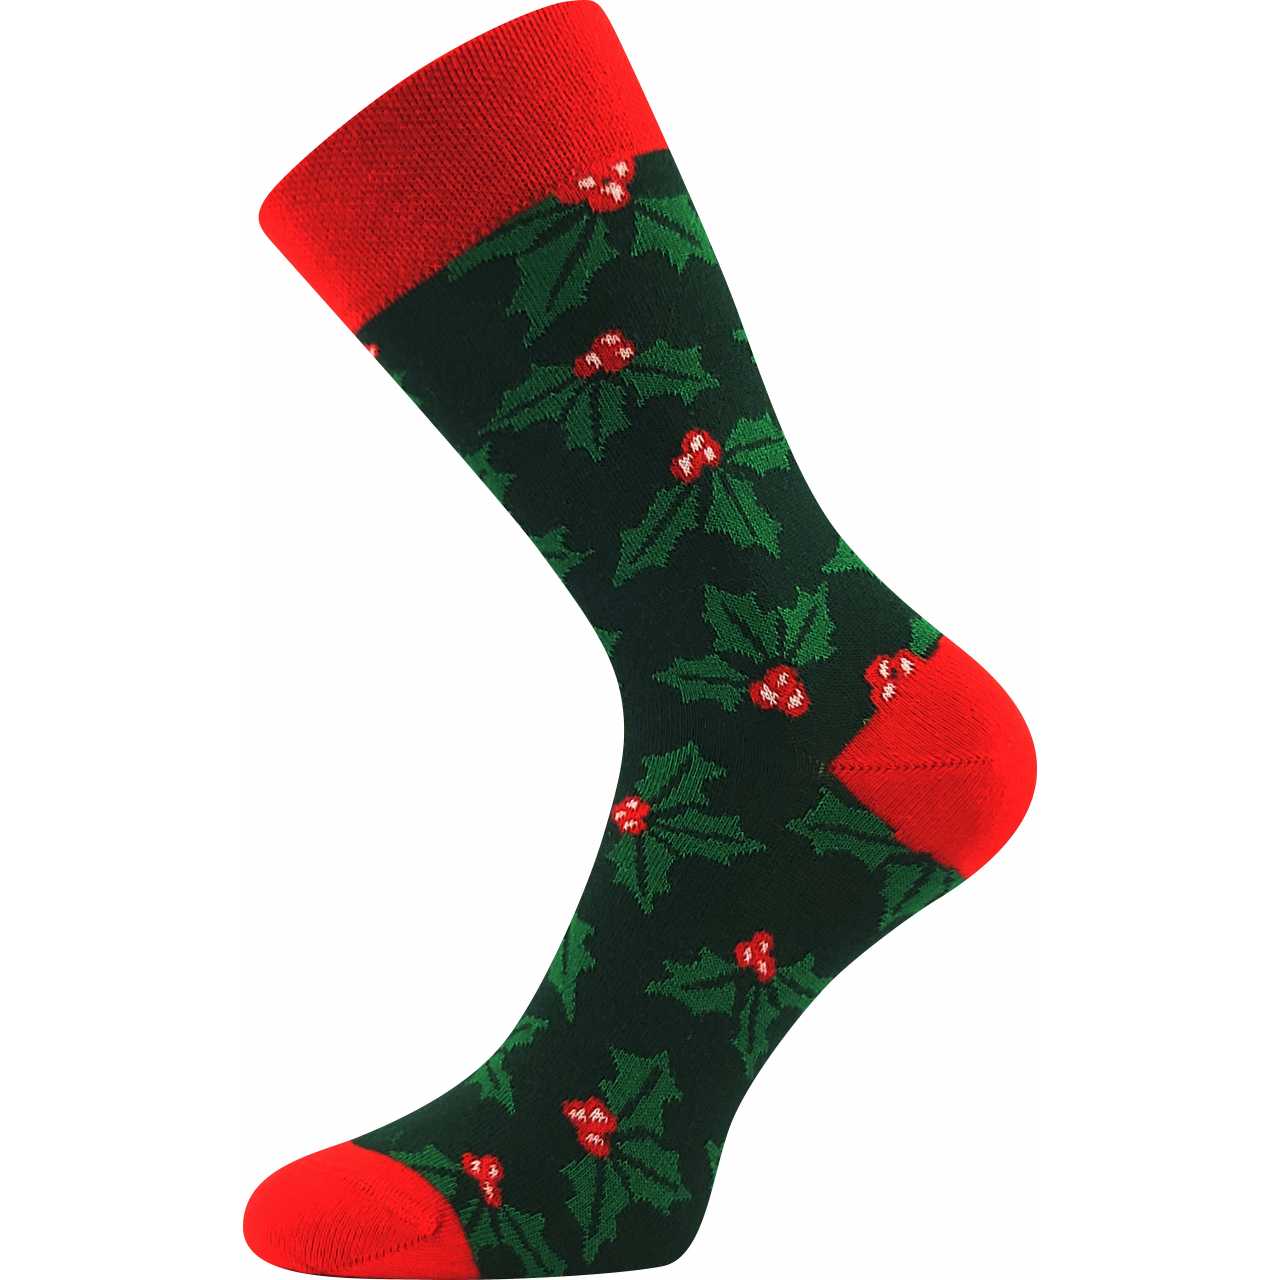 Ponožky slabé unisex Lonka Damerry Vánoce - zelené-červené, 39-42